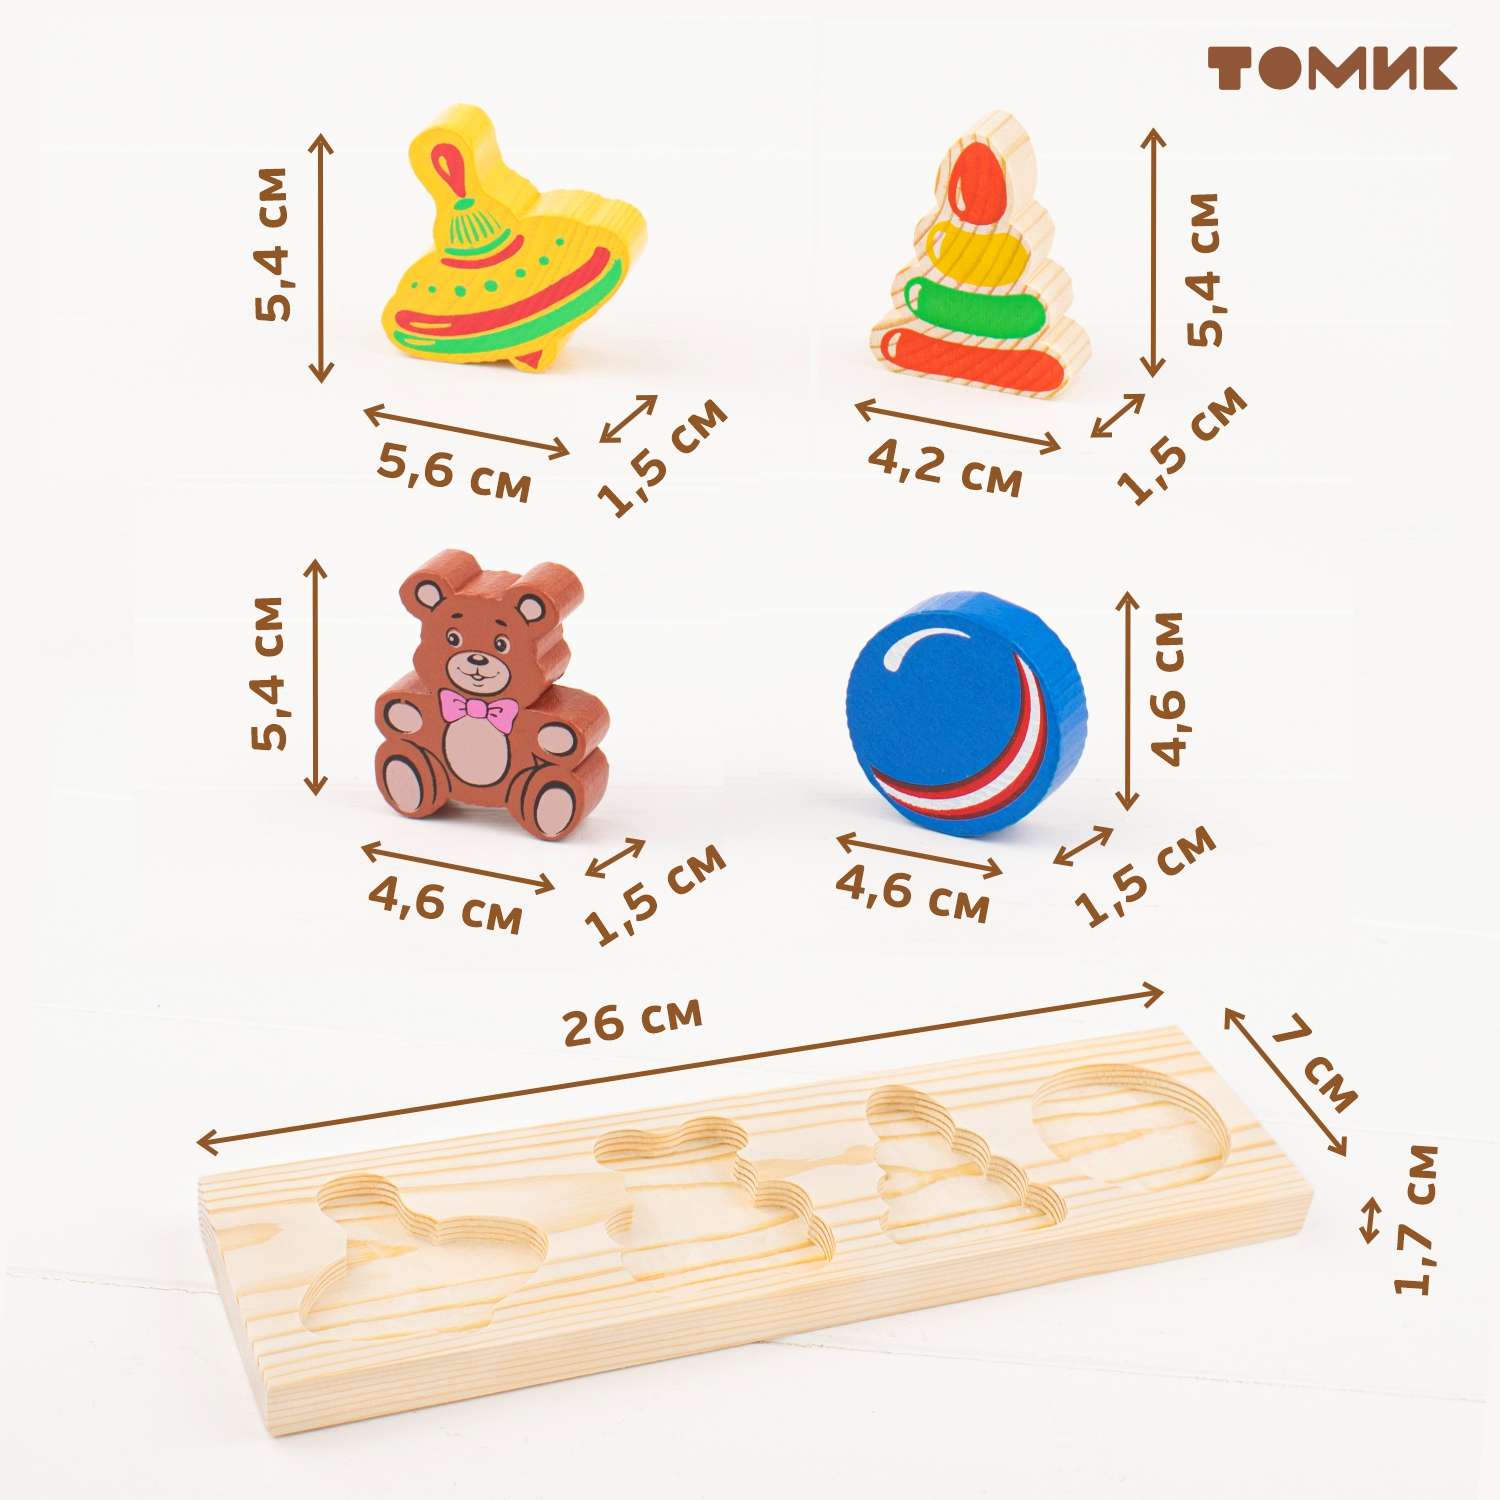 Рамка-Вкладыш Томик Игрушки 5 деталей 451 развивающая деревянная игрушка - фото 8